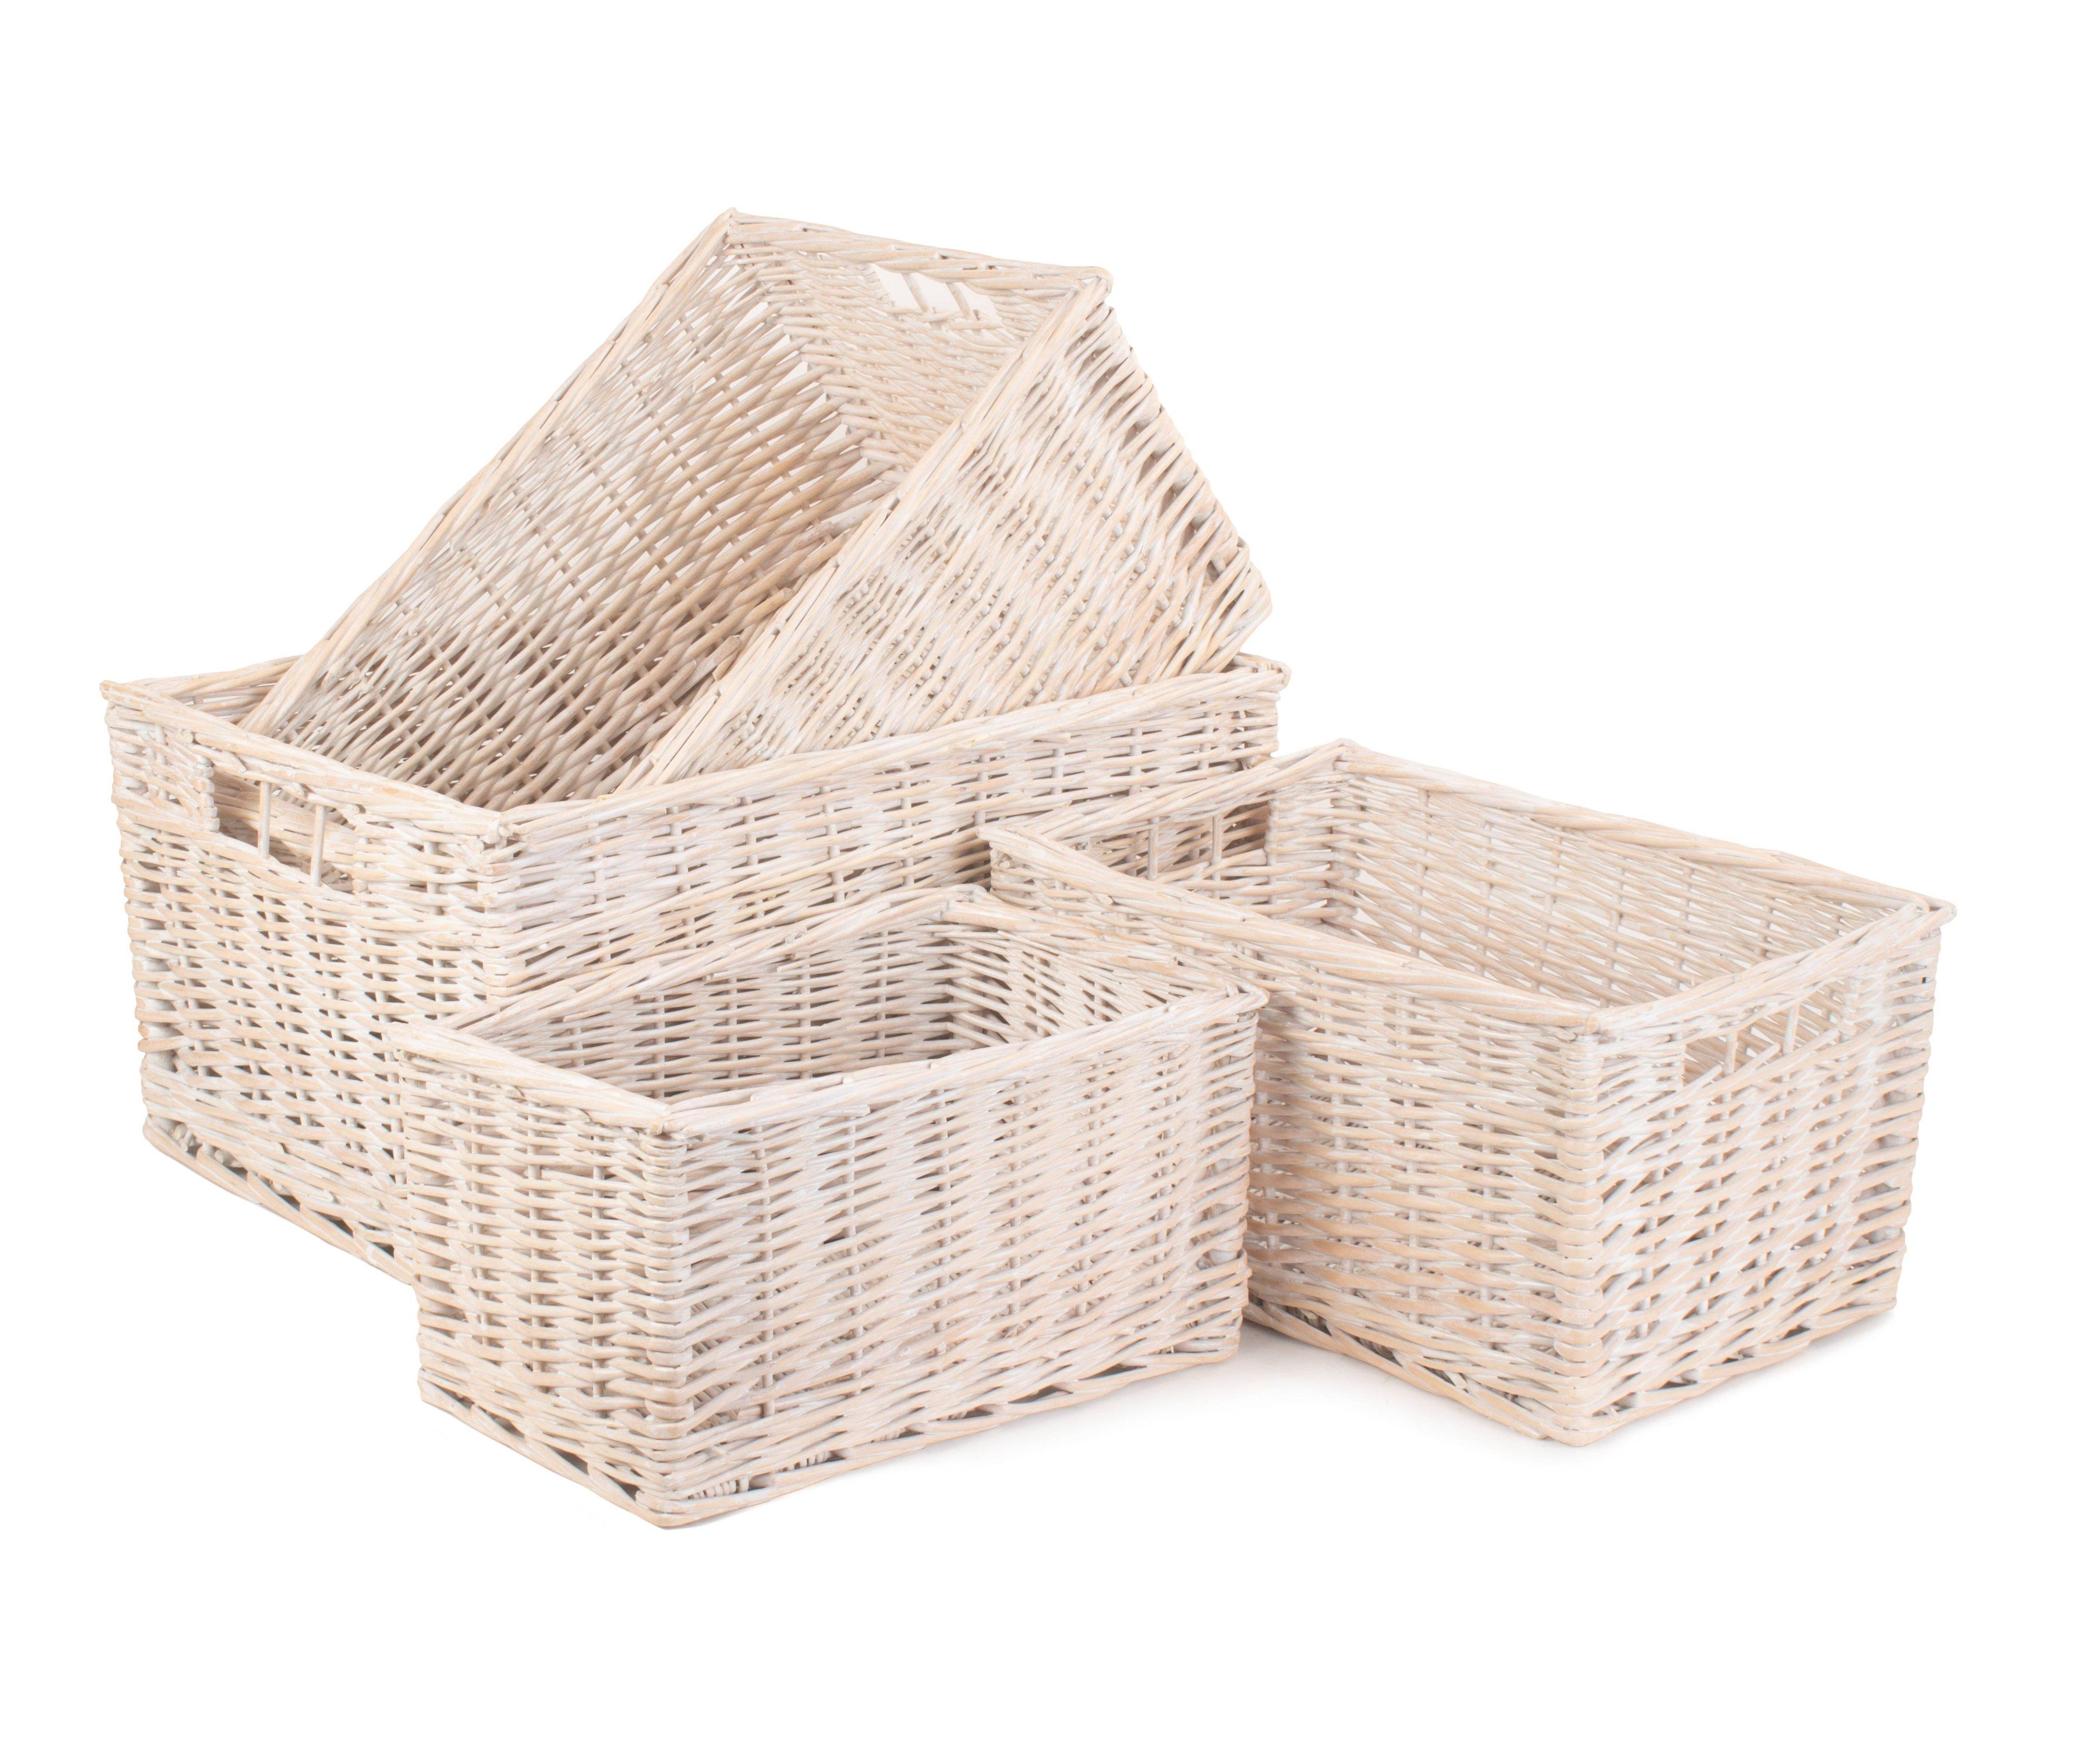 Wicker White Wash Storage Open Baskets Set of 4